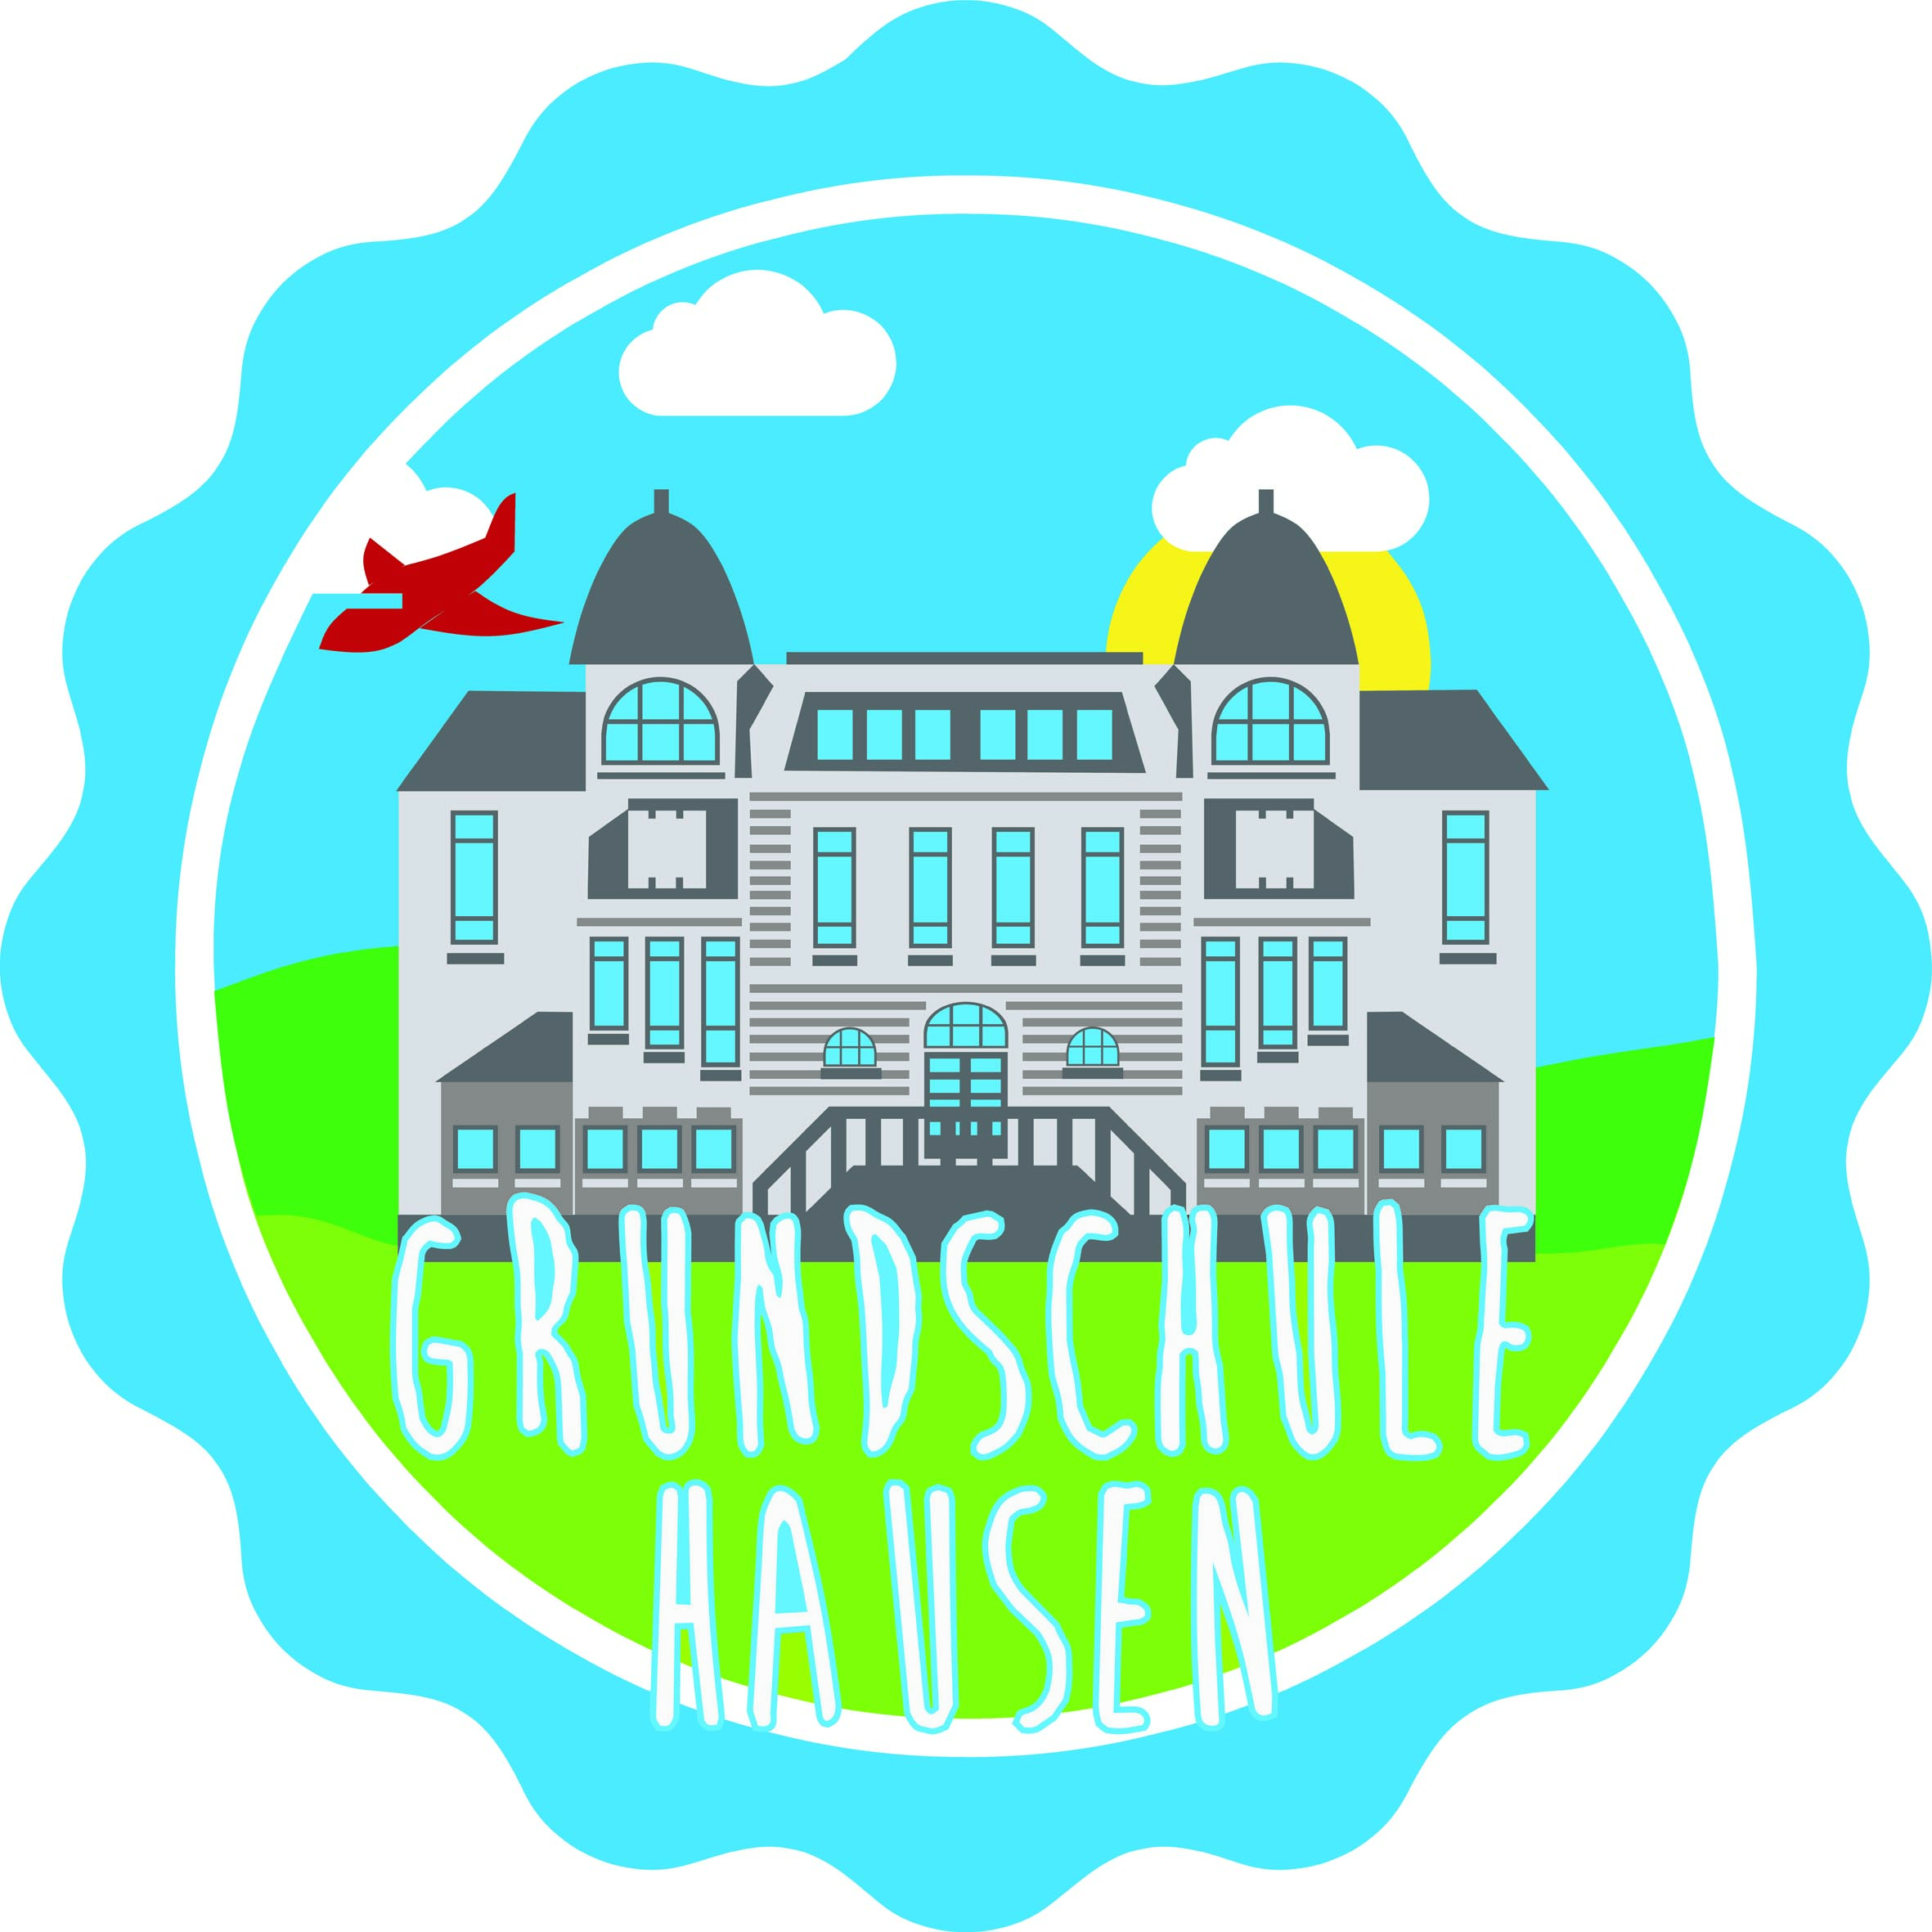 GrundschuleHausen_Logo